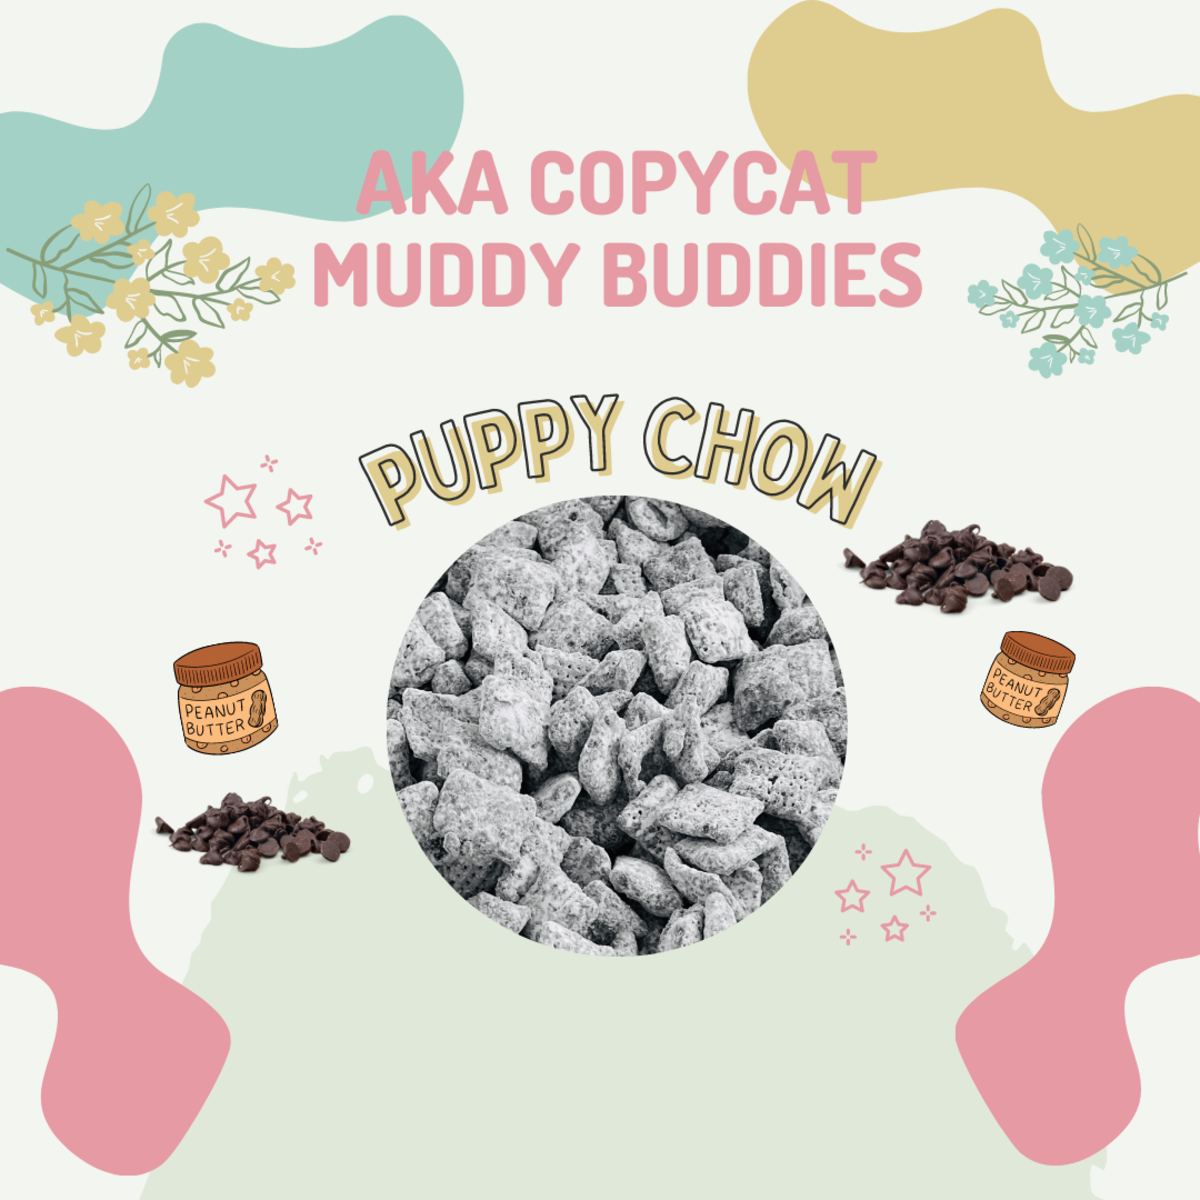 Puppy Chow (aka Copycat Muddie Buddies)